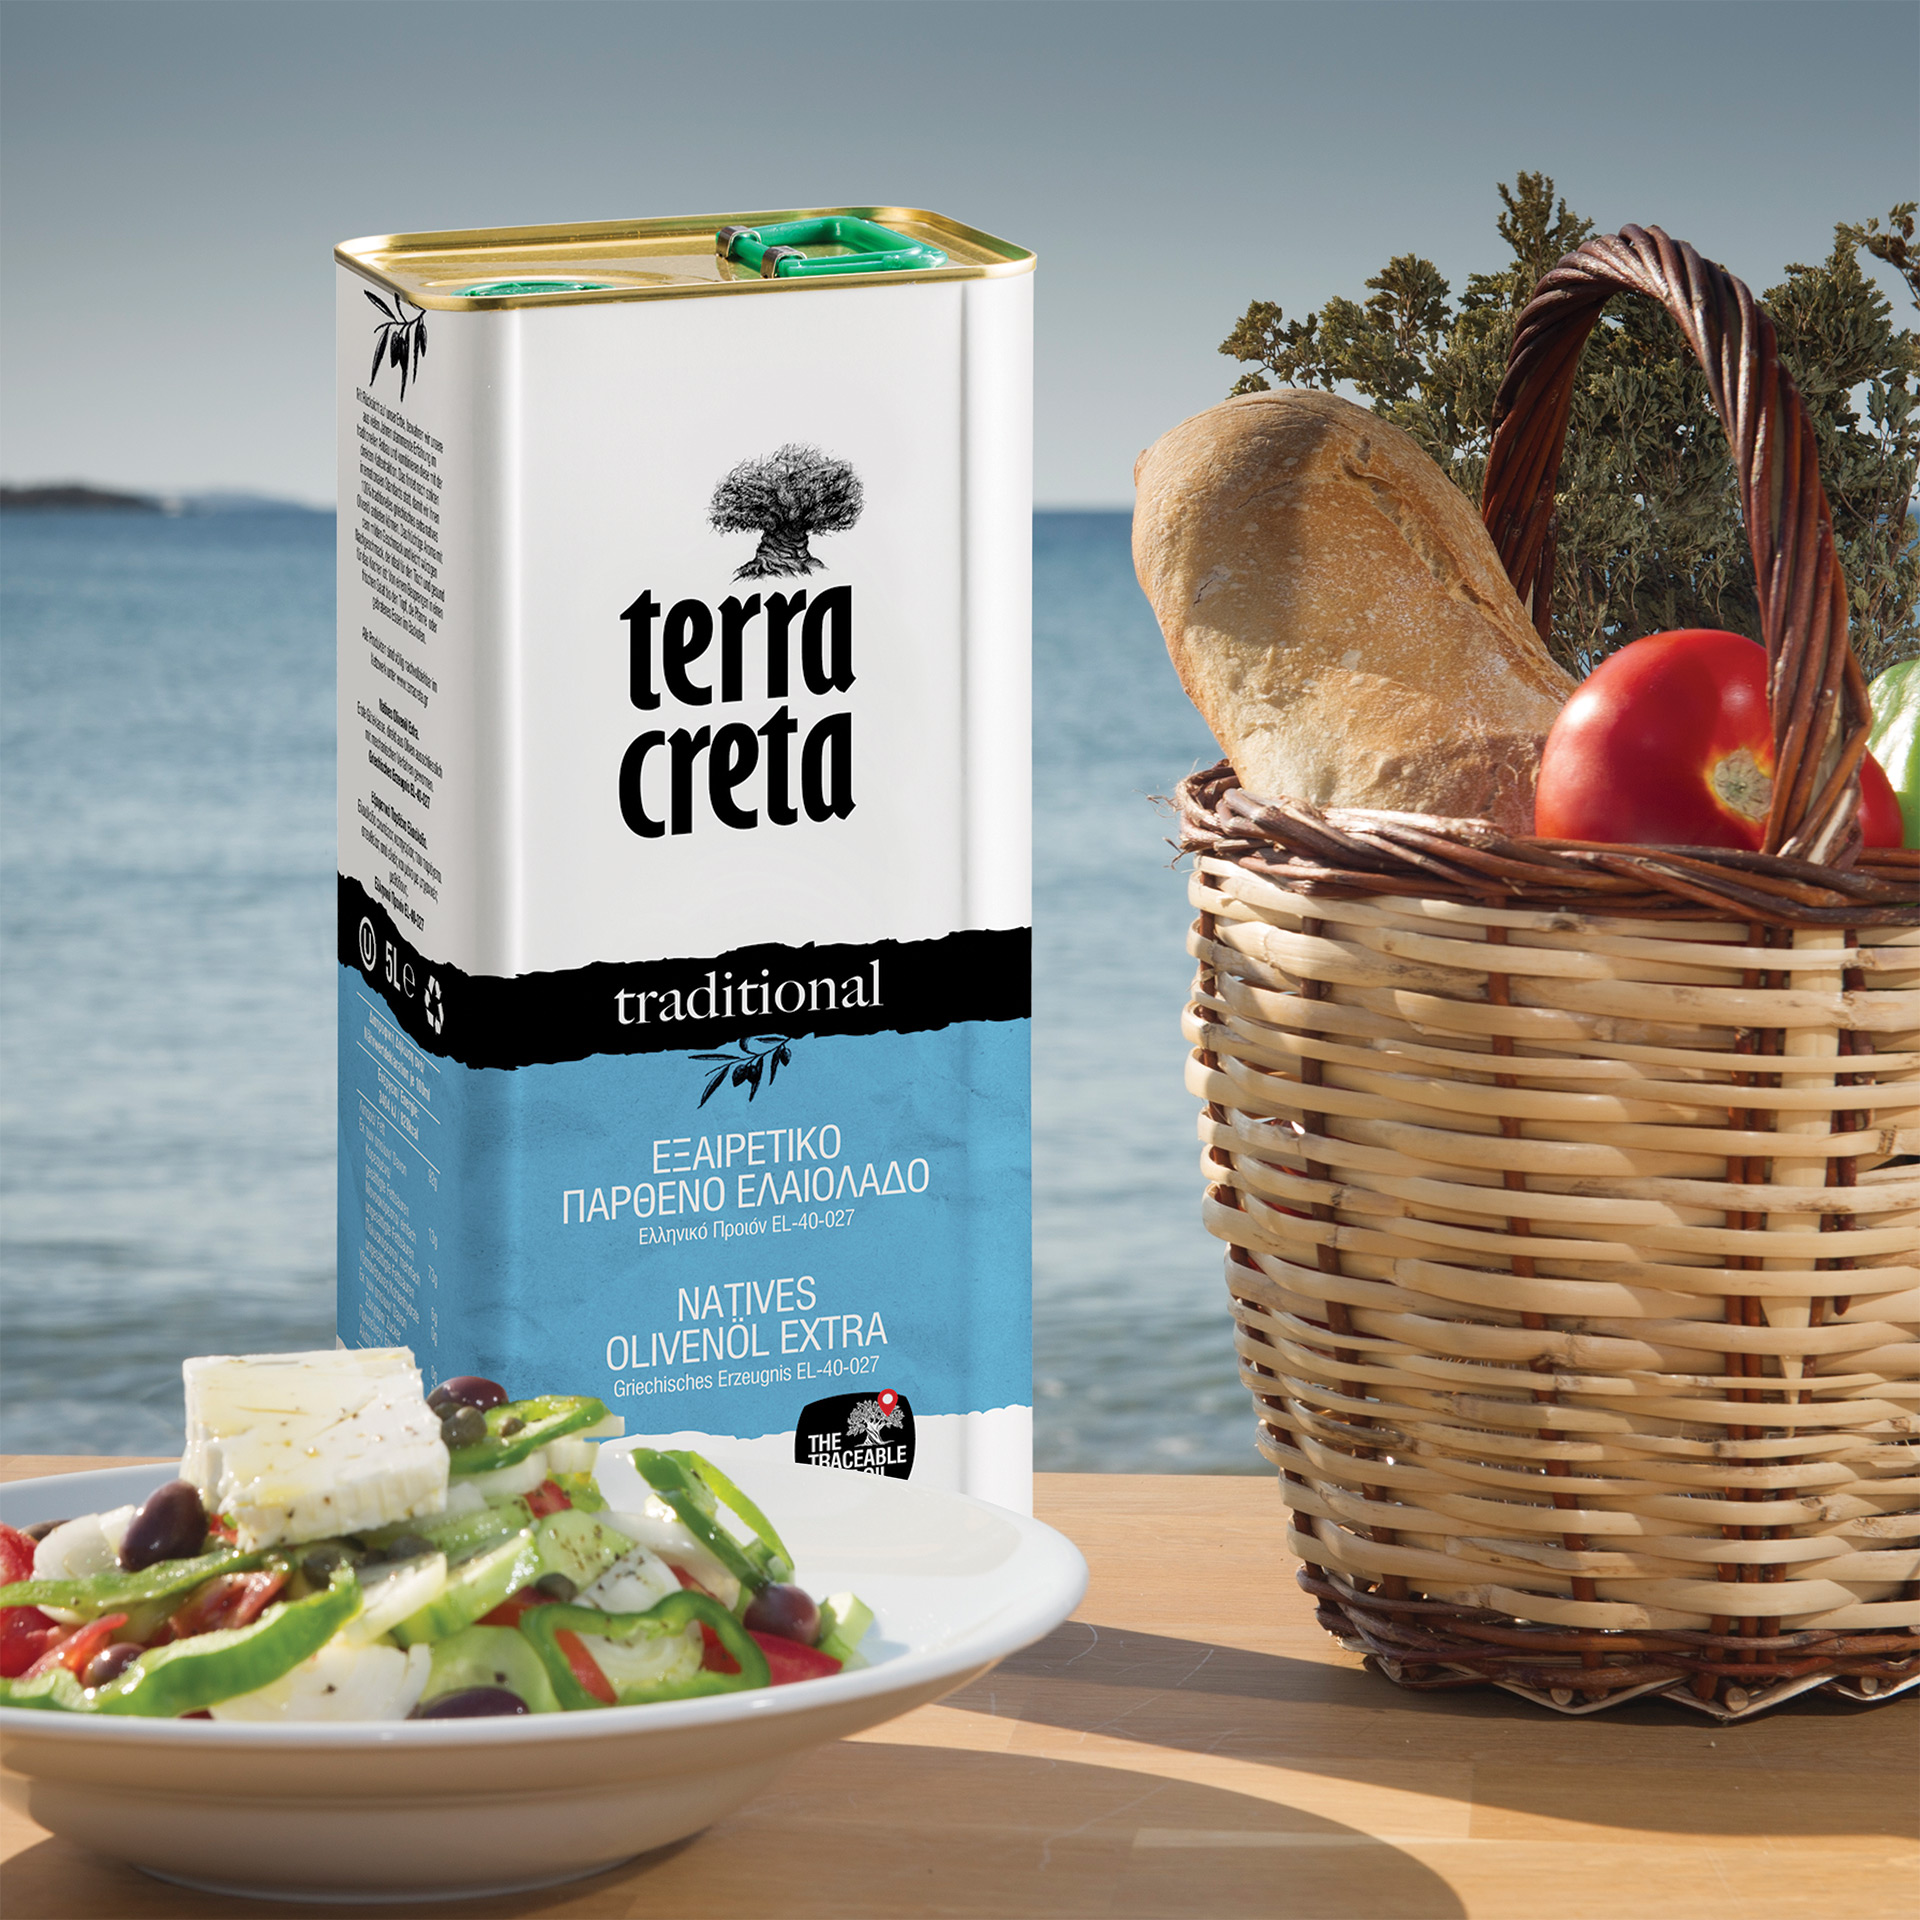 Terra Creta - Extra natives Olivenöl "traditional" extra 5 l